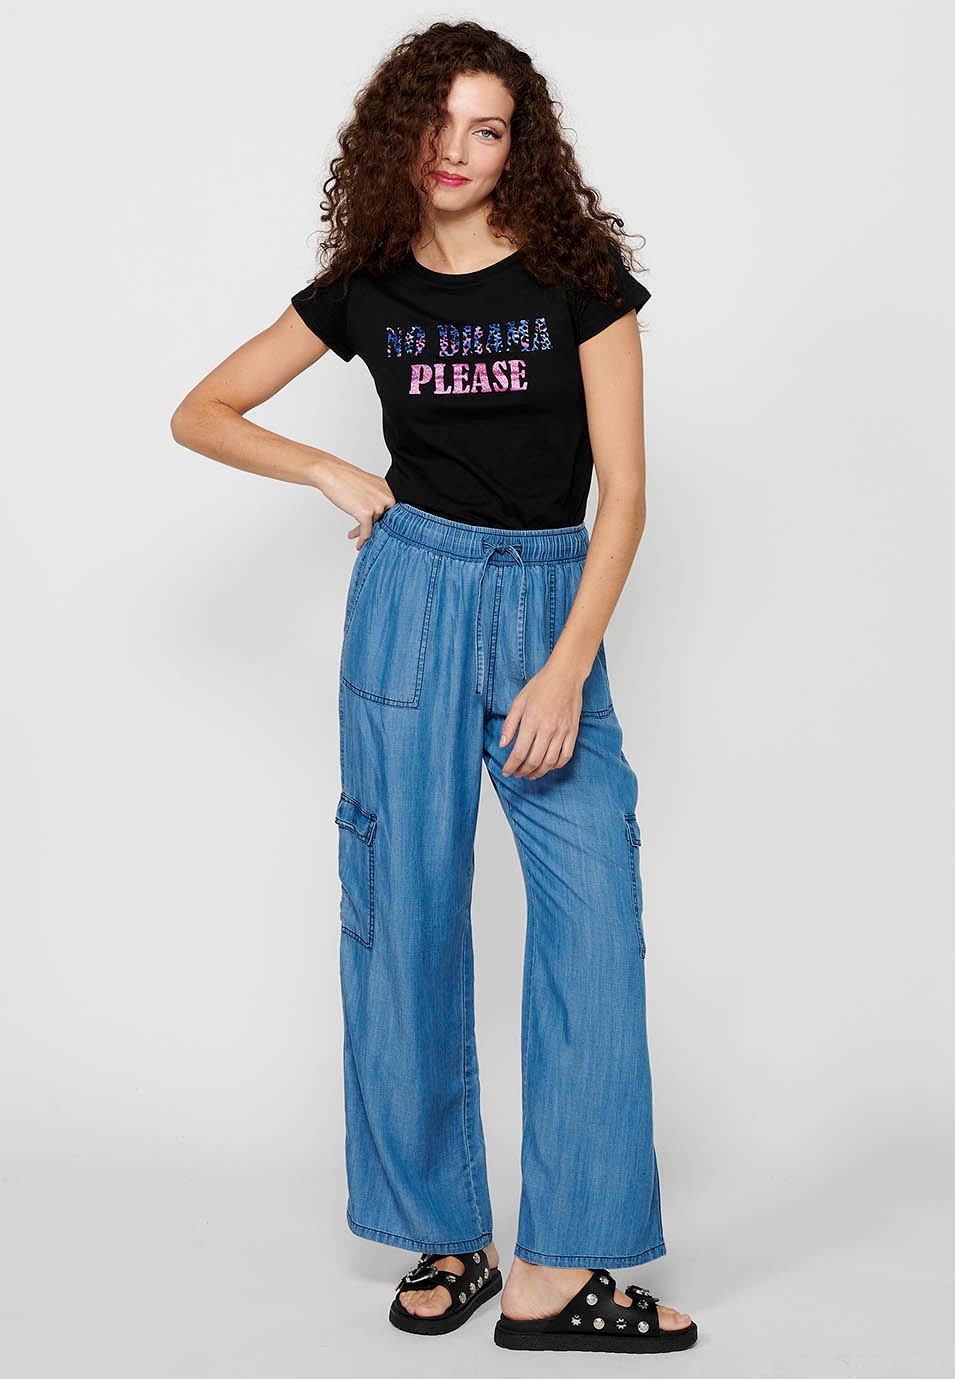 Damen-Kurzarm-T-Shirt aus Baumwolle mit Rundhalsausschnitt und schwarzem Farbaufdruck auf der Vorderseite 6